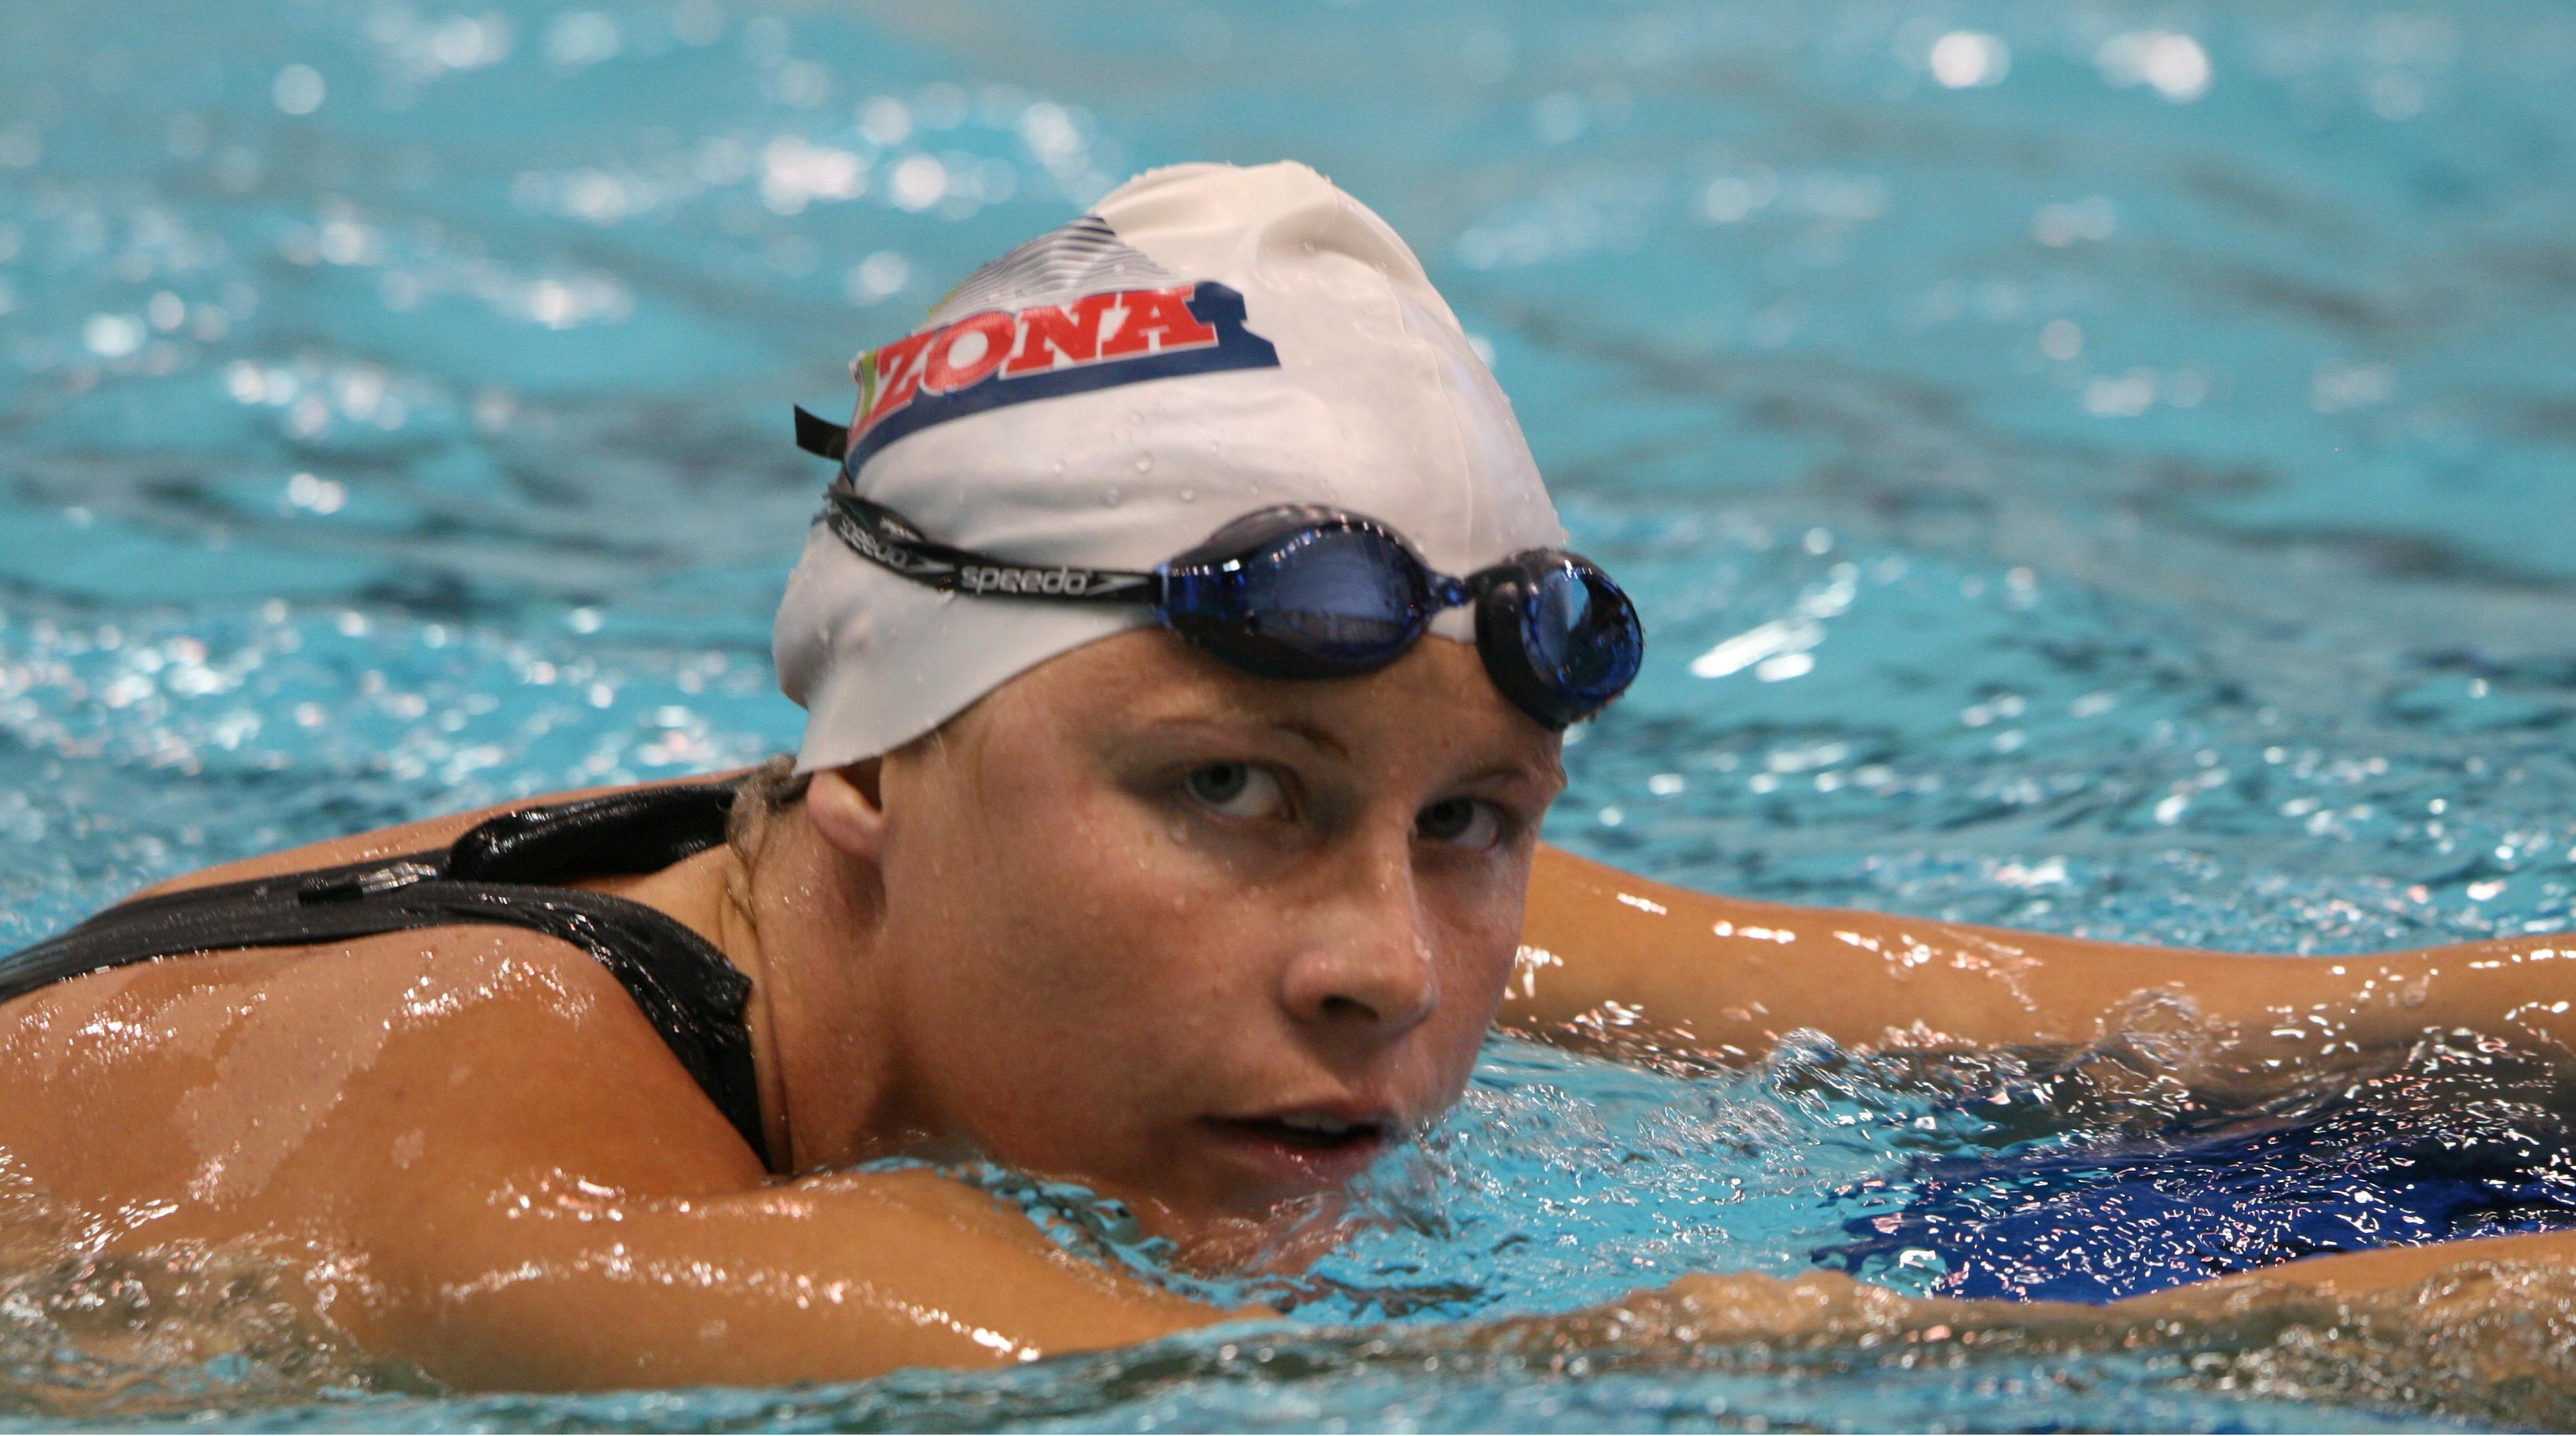 Justine Schluntz swimming